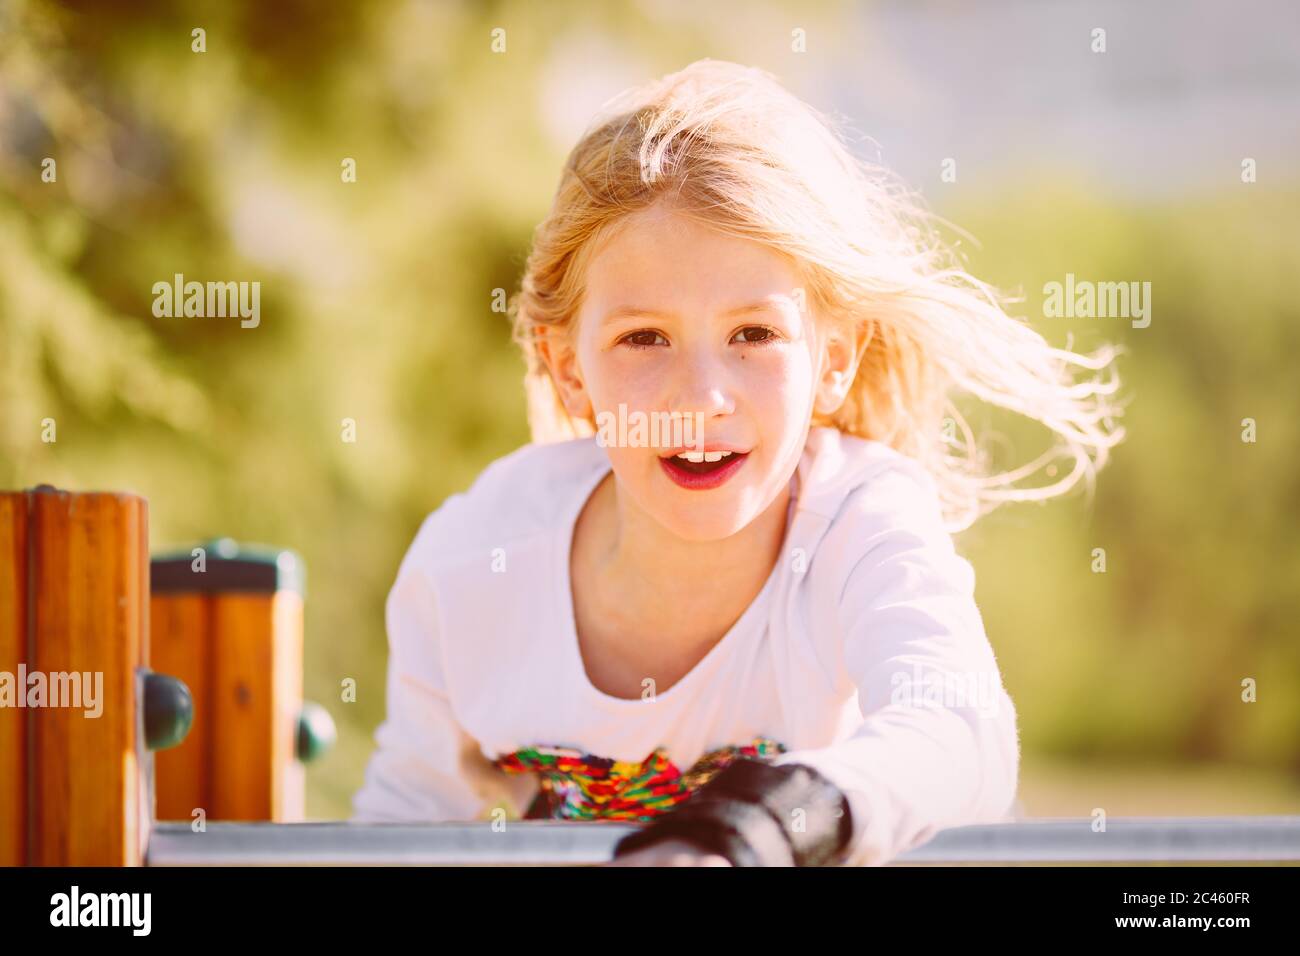 Ritratto di una ragazza carina, età della scuola primaria, con capelli biondi che volano nel vento sul parco giochi Foto Stock